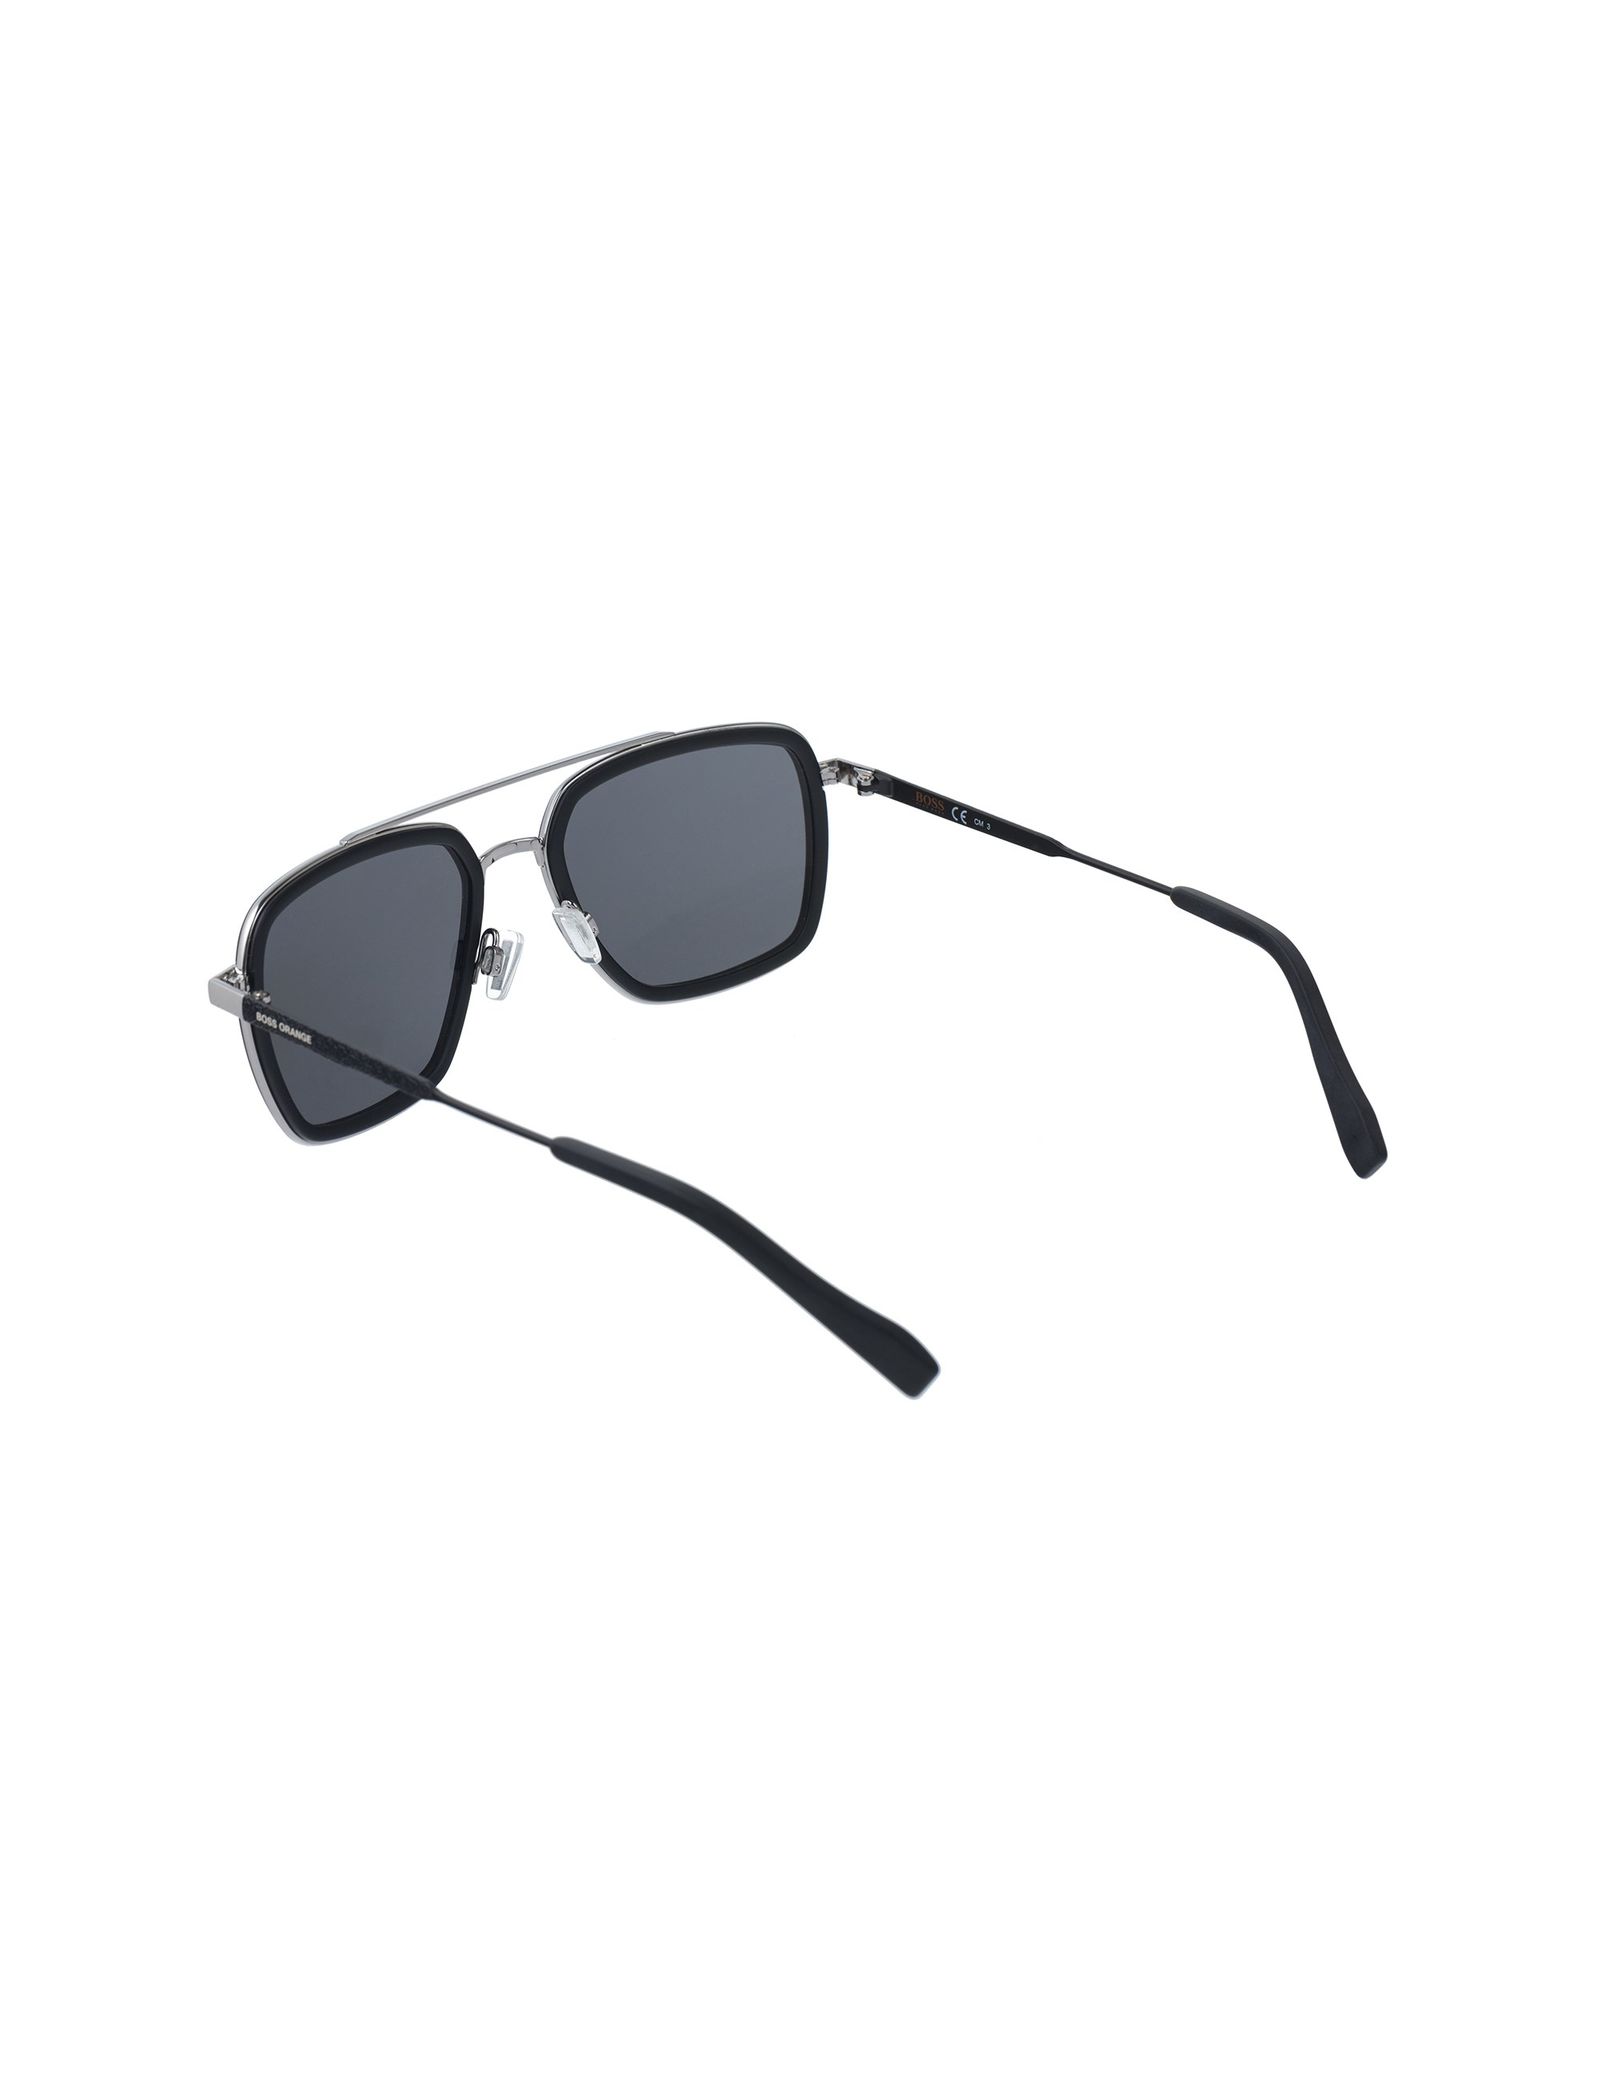 عینک آفتابی خلبانی مردانه - باس اورنج - مشکي  - 5